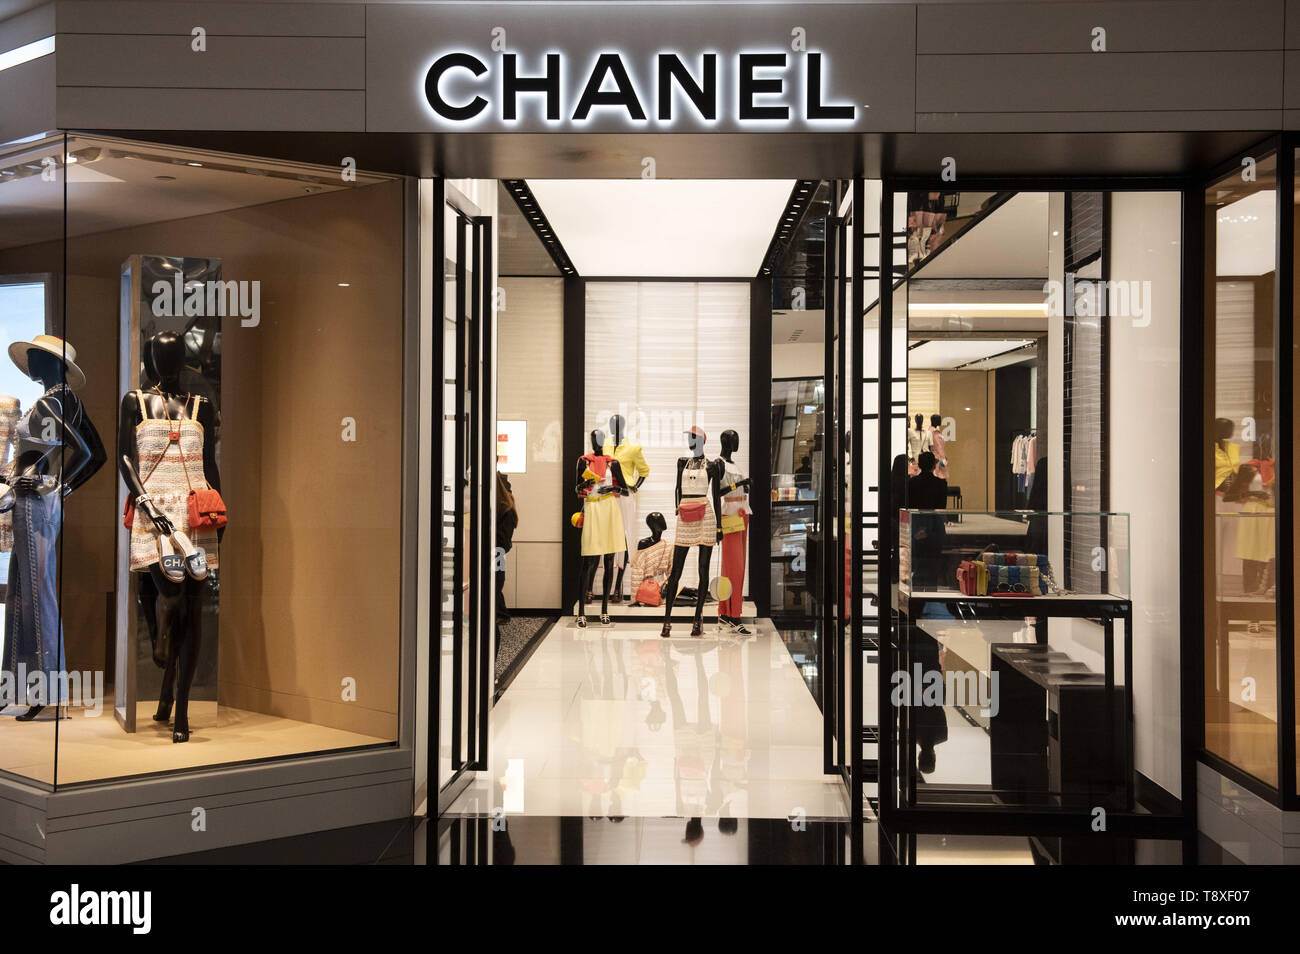 Mayo 8, 2019 - Hong Kong - multinacional Chanel ropa productos de belleza tienda de marca se ve en Kong. (Crédito de la Imagen: © Budrul Chukrut/sopa de